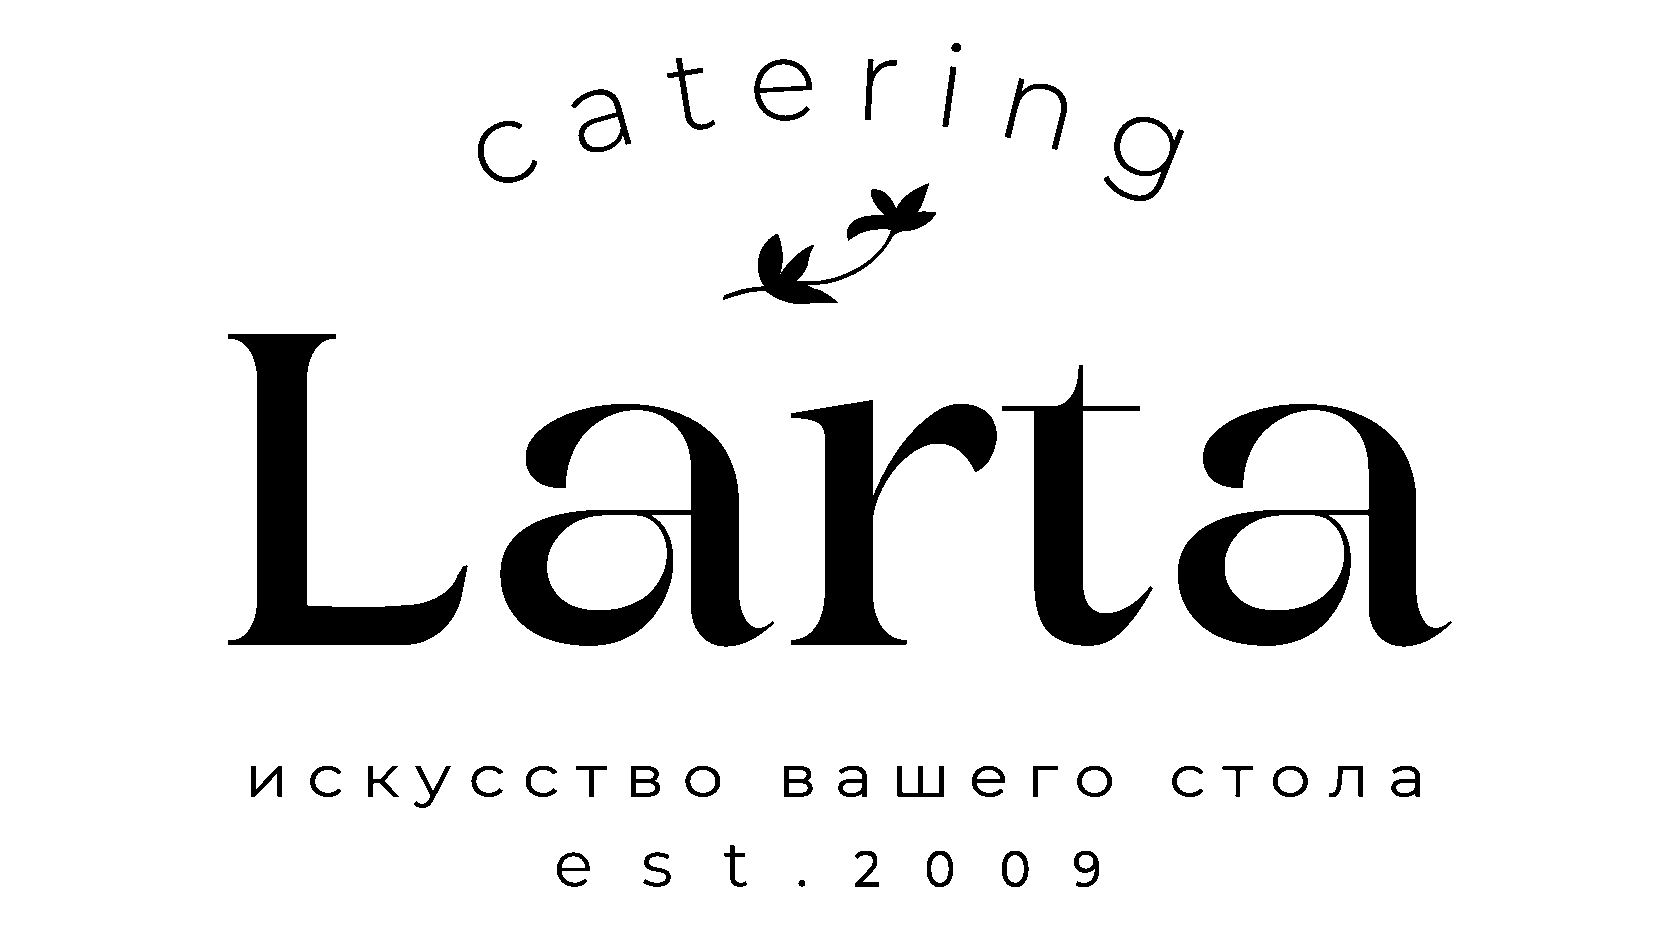 Larta Cartering